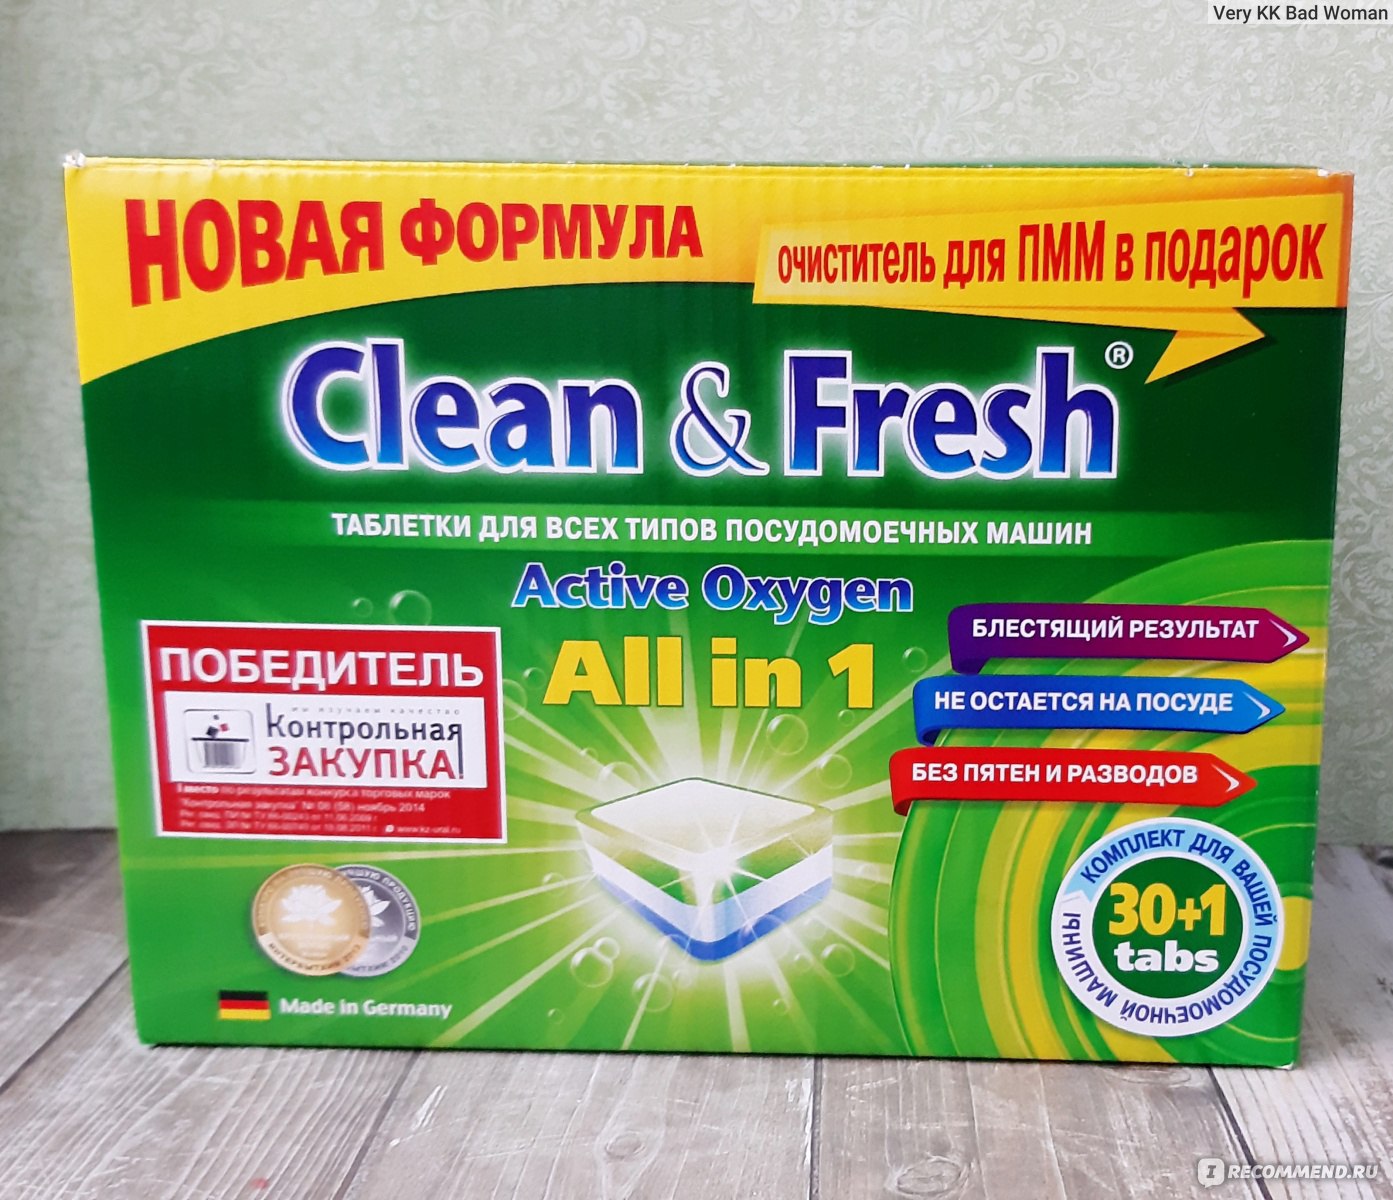 Clean fresh all in 1. Clean & Fresh all in 1 таблетки для посудомоечной машины. Clean and Fresh таблетки для посудомойки. Таблетки для посудомоечной машины победитель контрольной закупки. Clean Fresh таблетки для посудомоечных машин как выглядят.